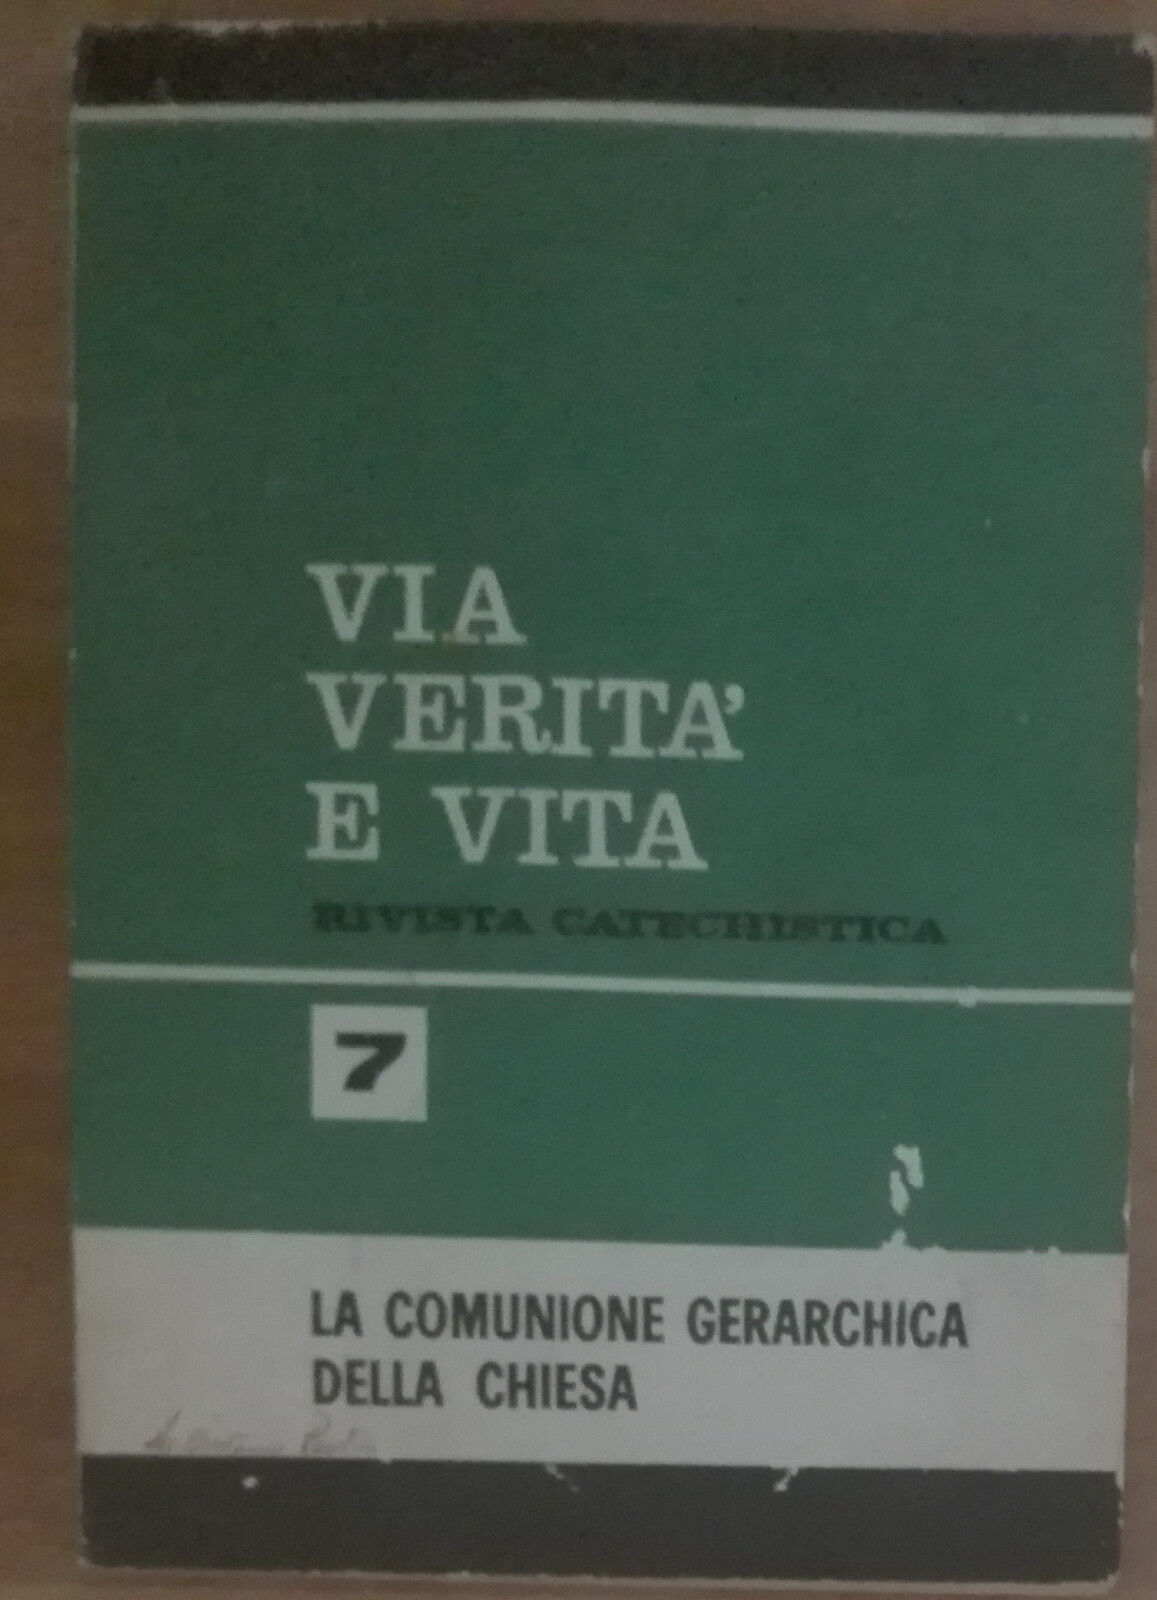 Via verit? e vita - AA.VV. - Centro catechistico paolino,1966 - A